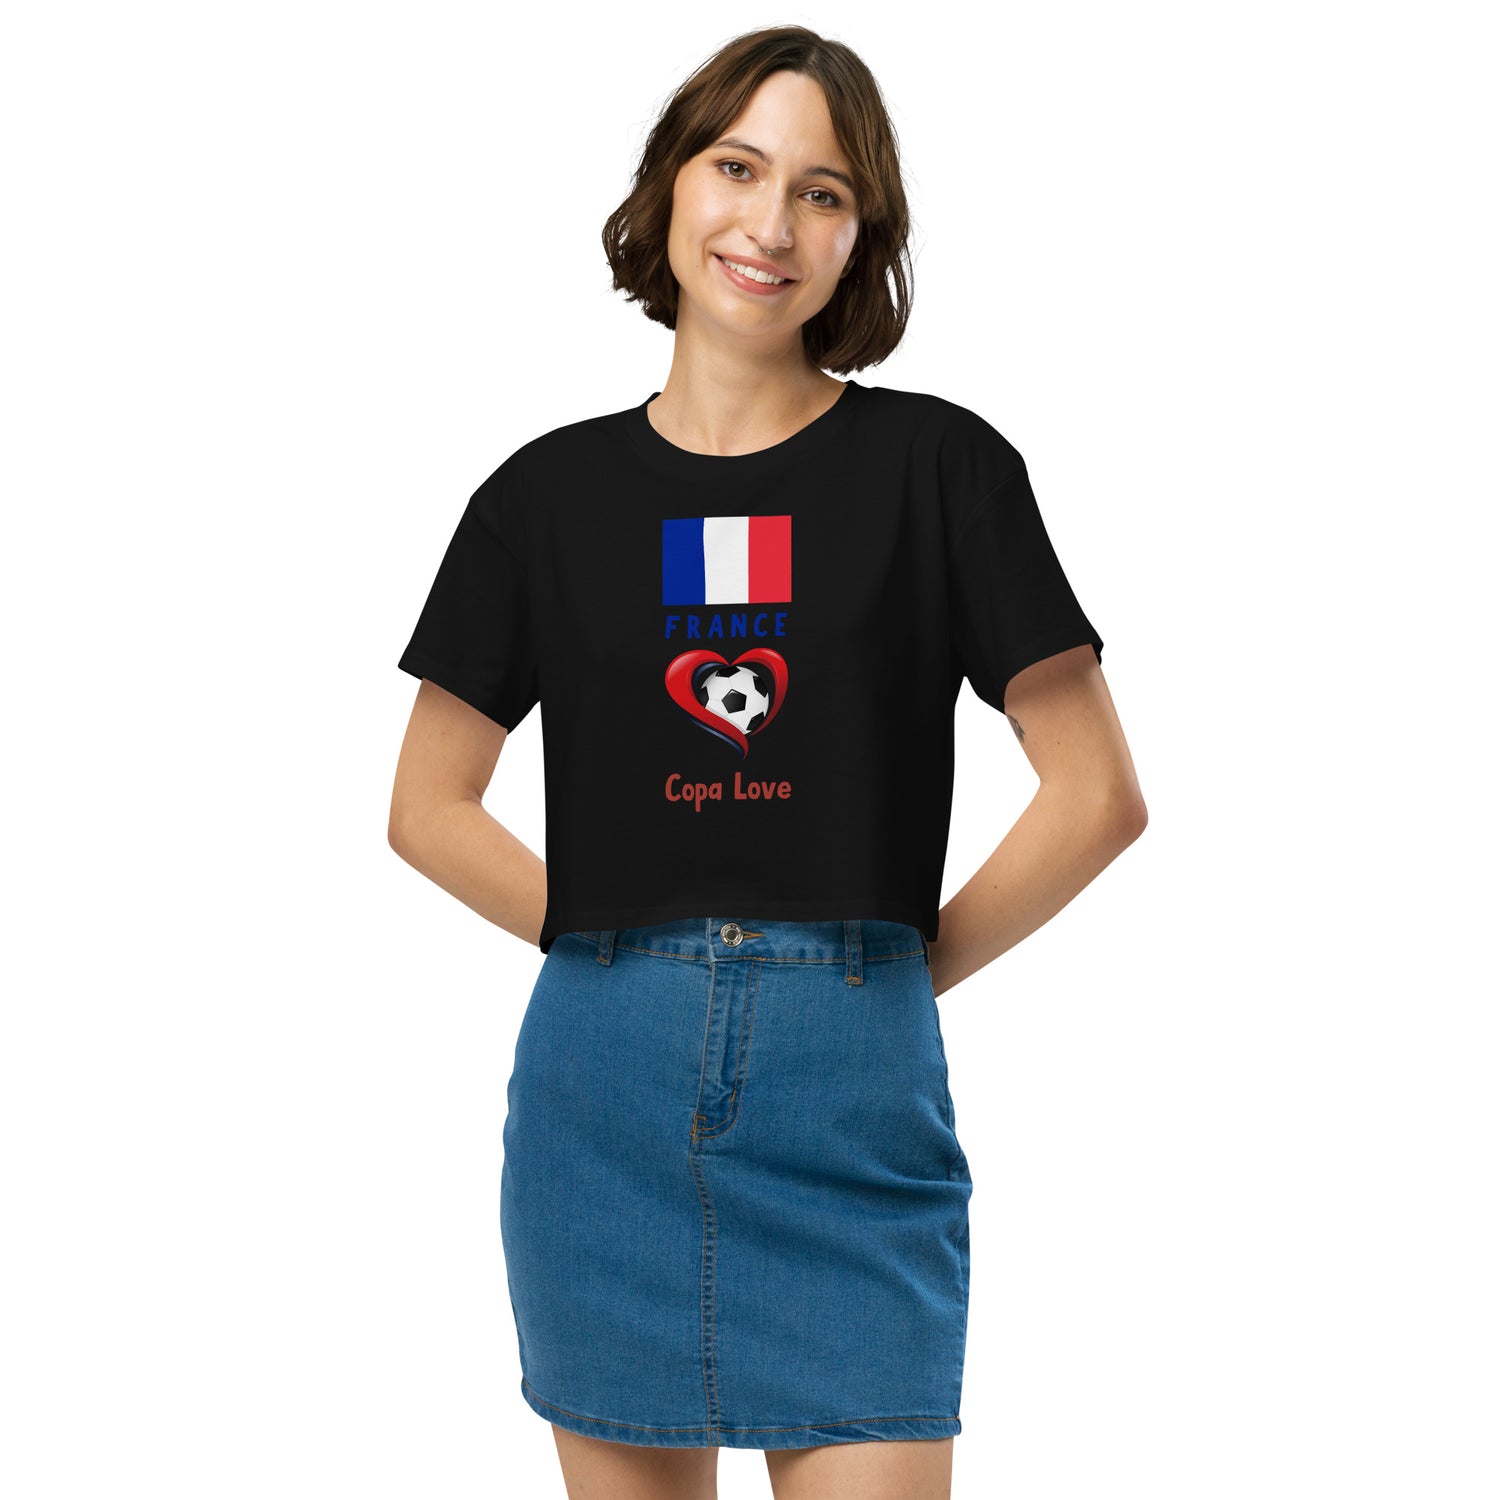 FRANCE - Copa Love Women’s crop top